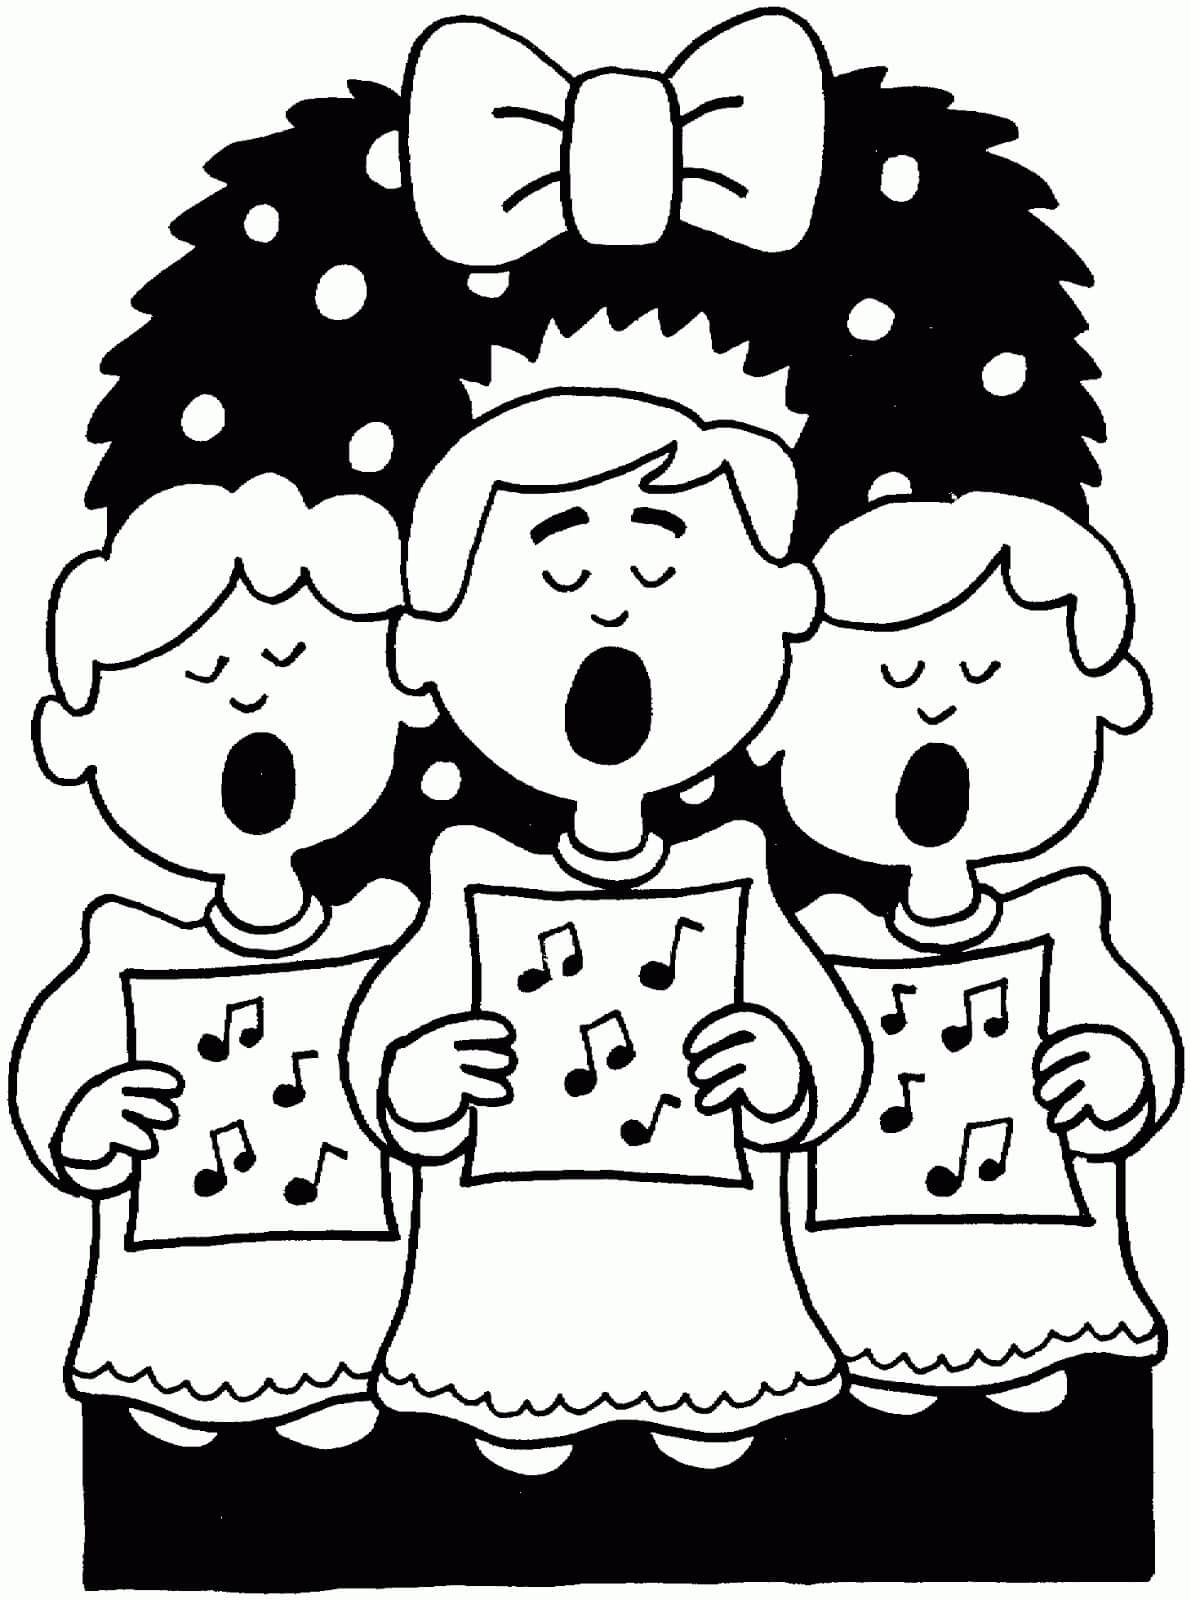 Het zingen van het kerstlied